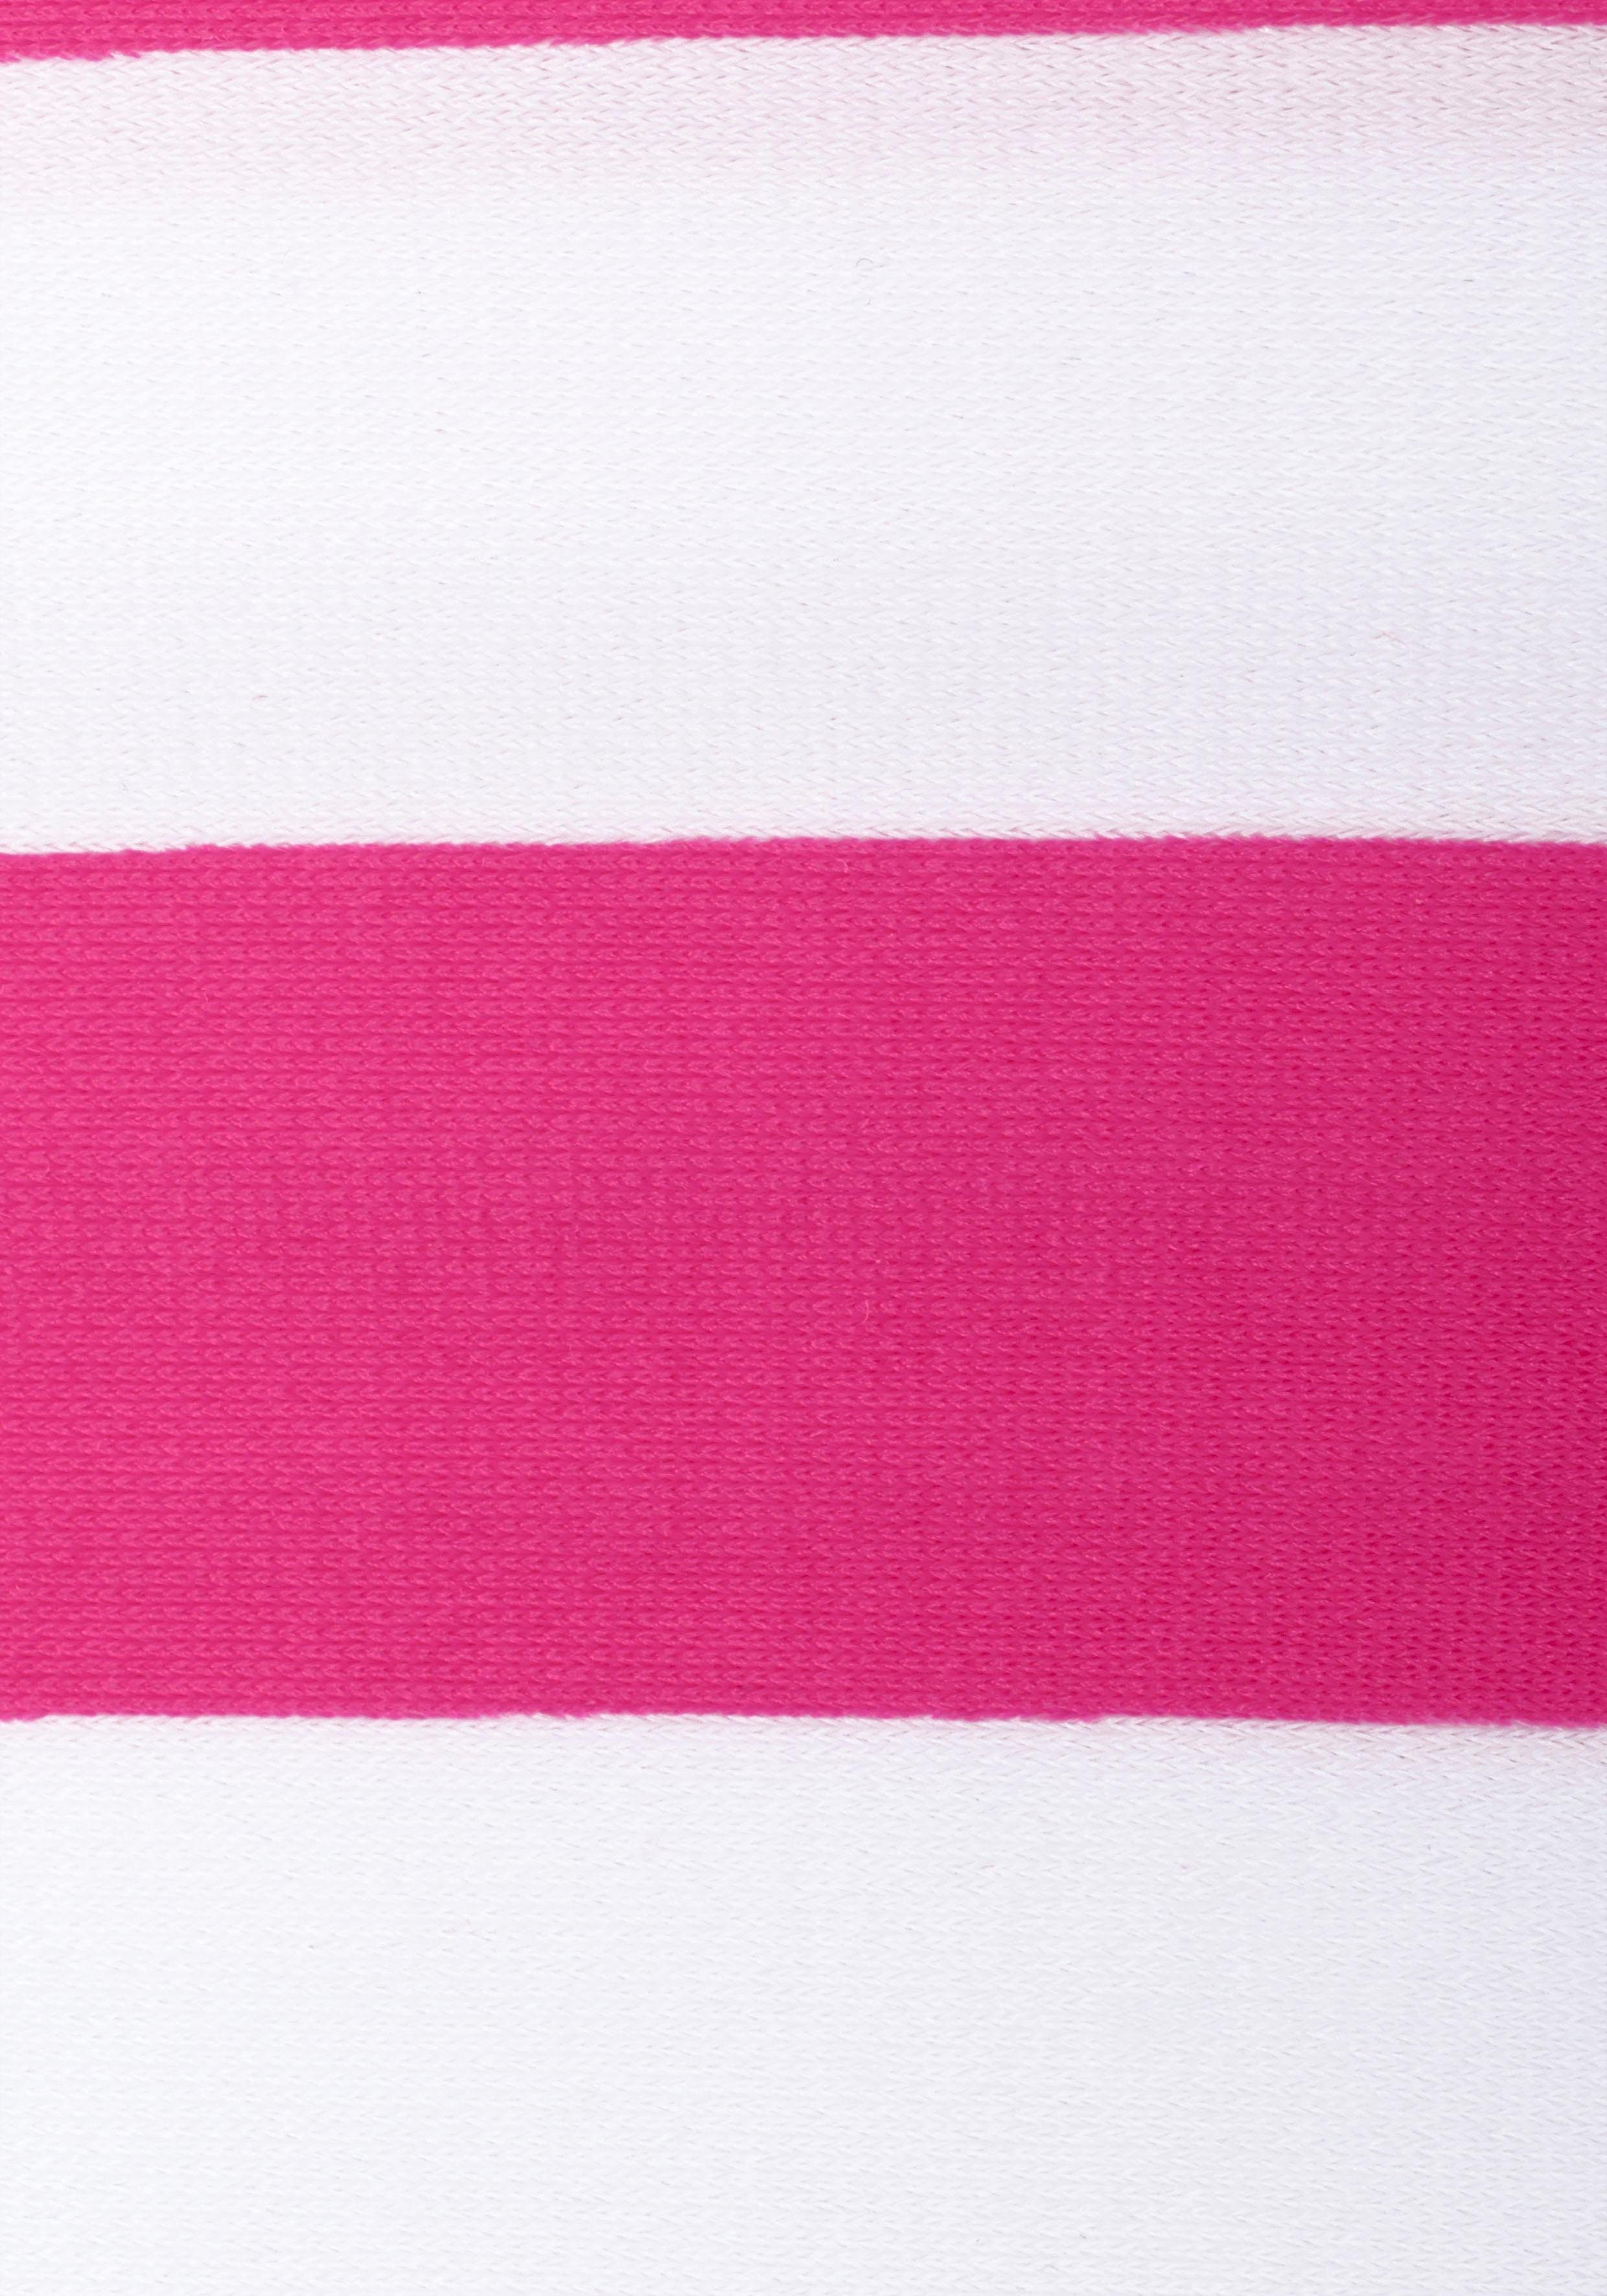 Bench. mit trendigen Streifen pink-weiß Bandeau-Bikini